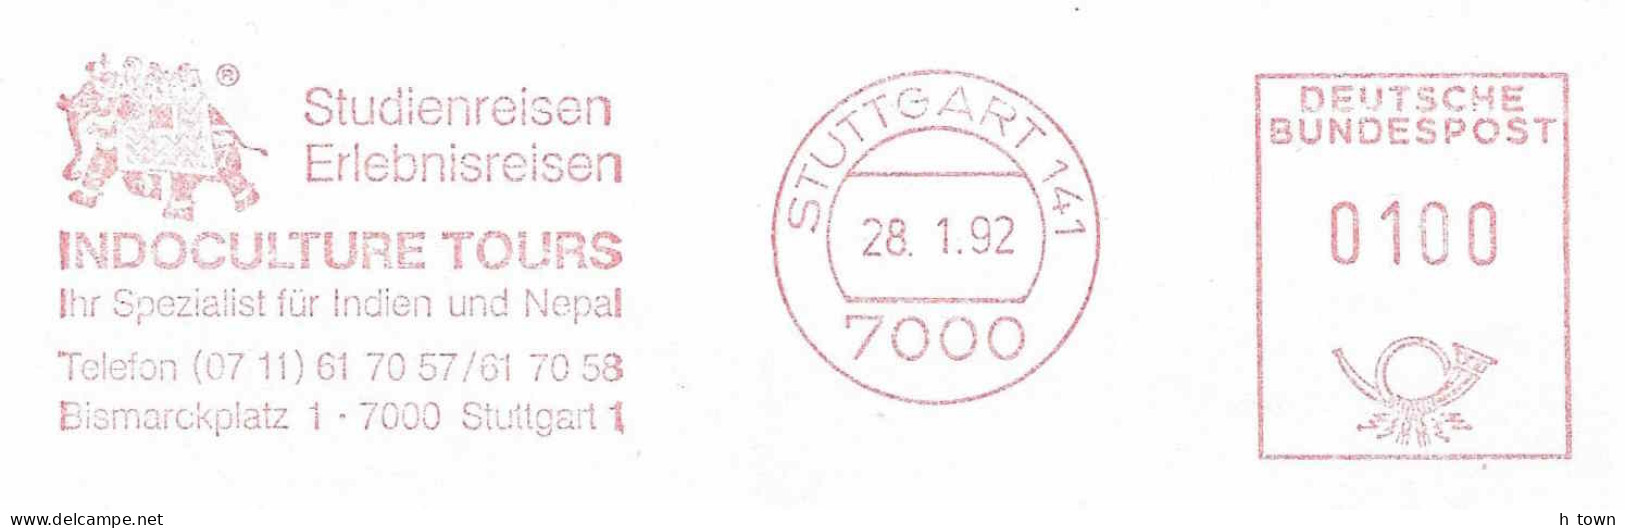 414  Elephant: Ema D'Allemagne, 1992 - Tourism, India: Meter Stamp From Stuttgart, Germany - Elefanten